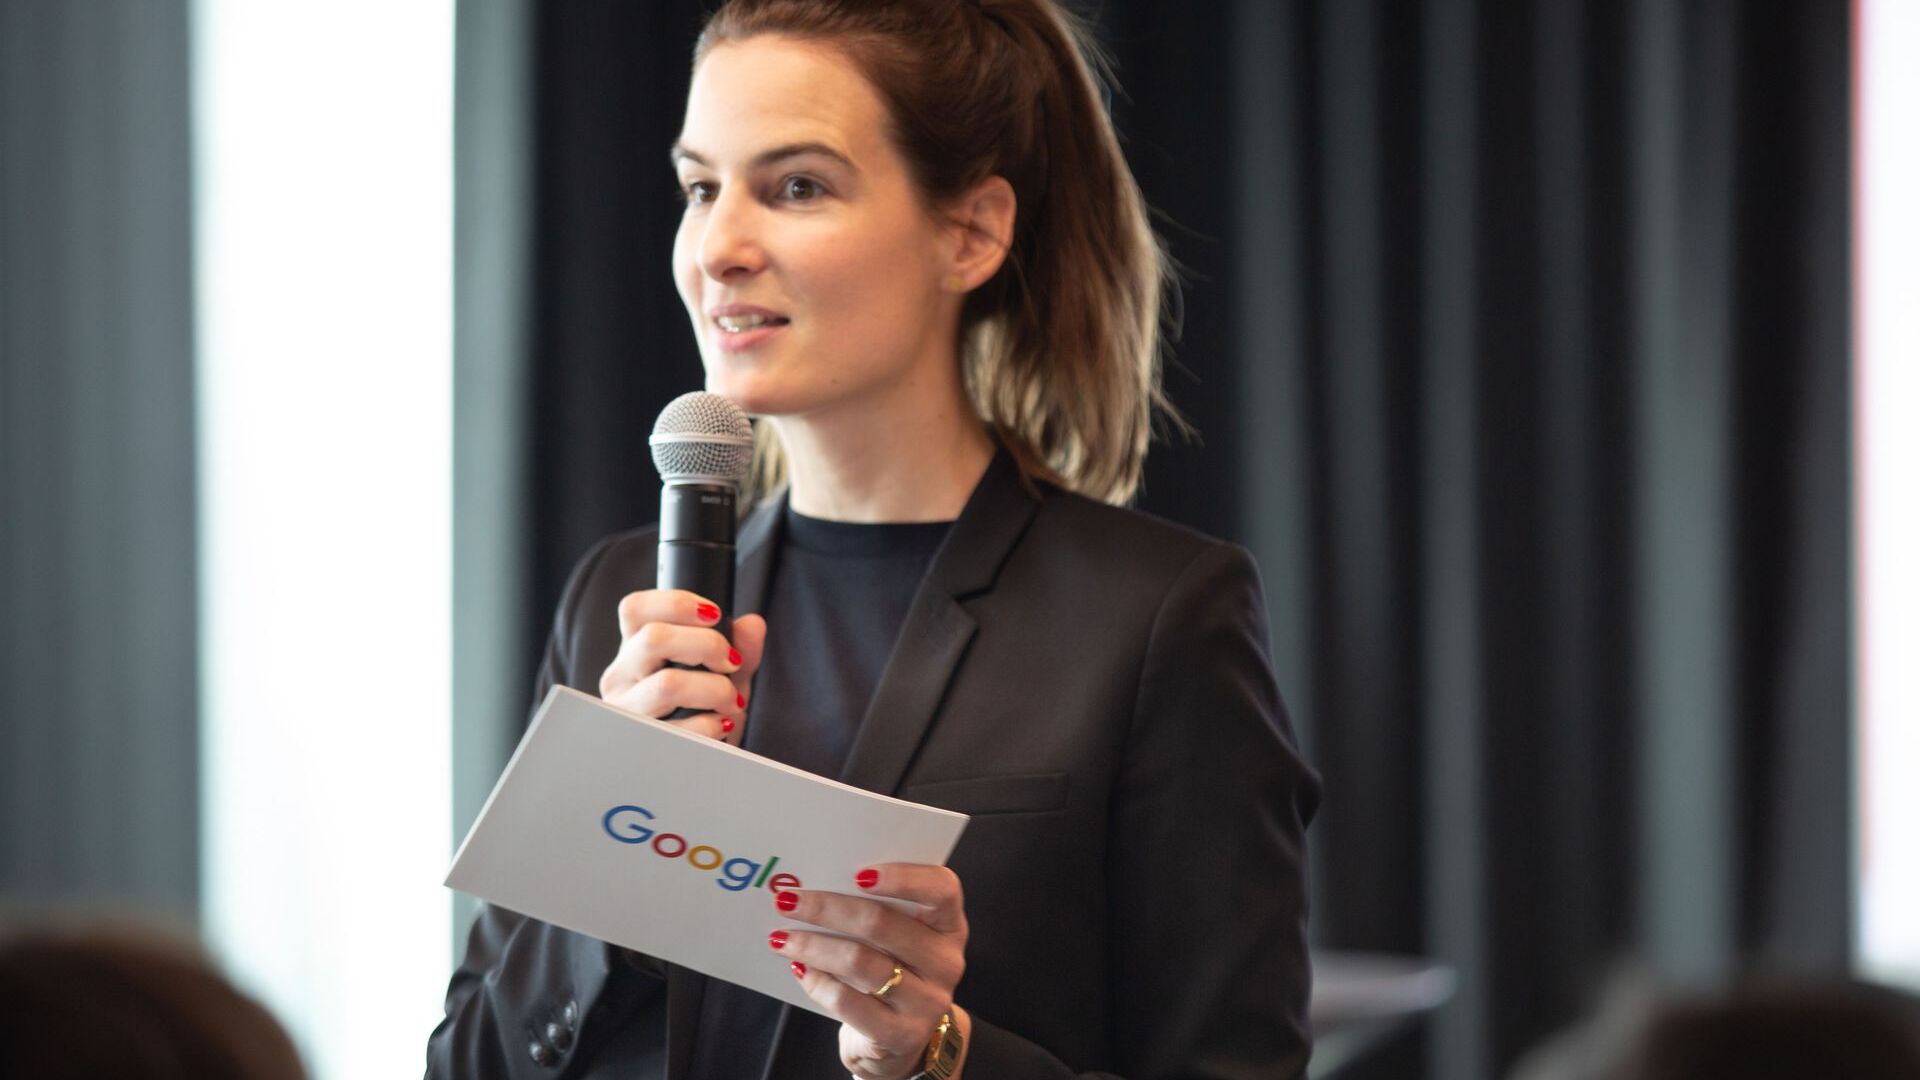 Pia De Carli, équipe média de Google Suisse, a assisté à l'ouverture officielle du nouveau Google Campus Europaallee à Zurich le 27 juin 2022